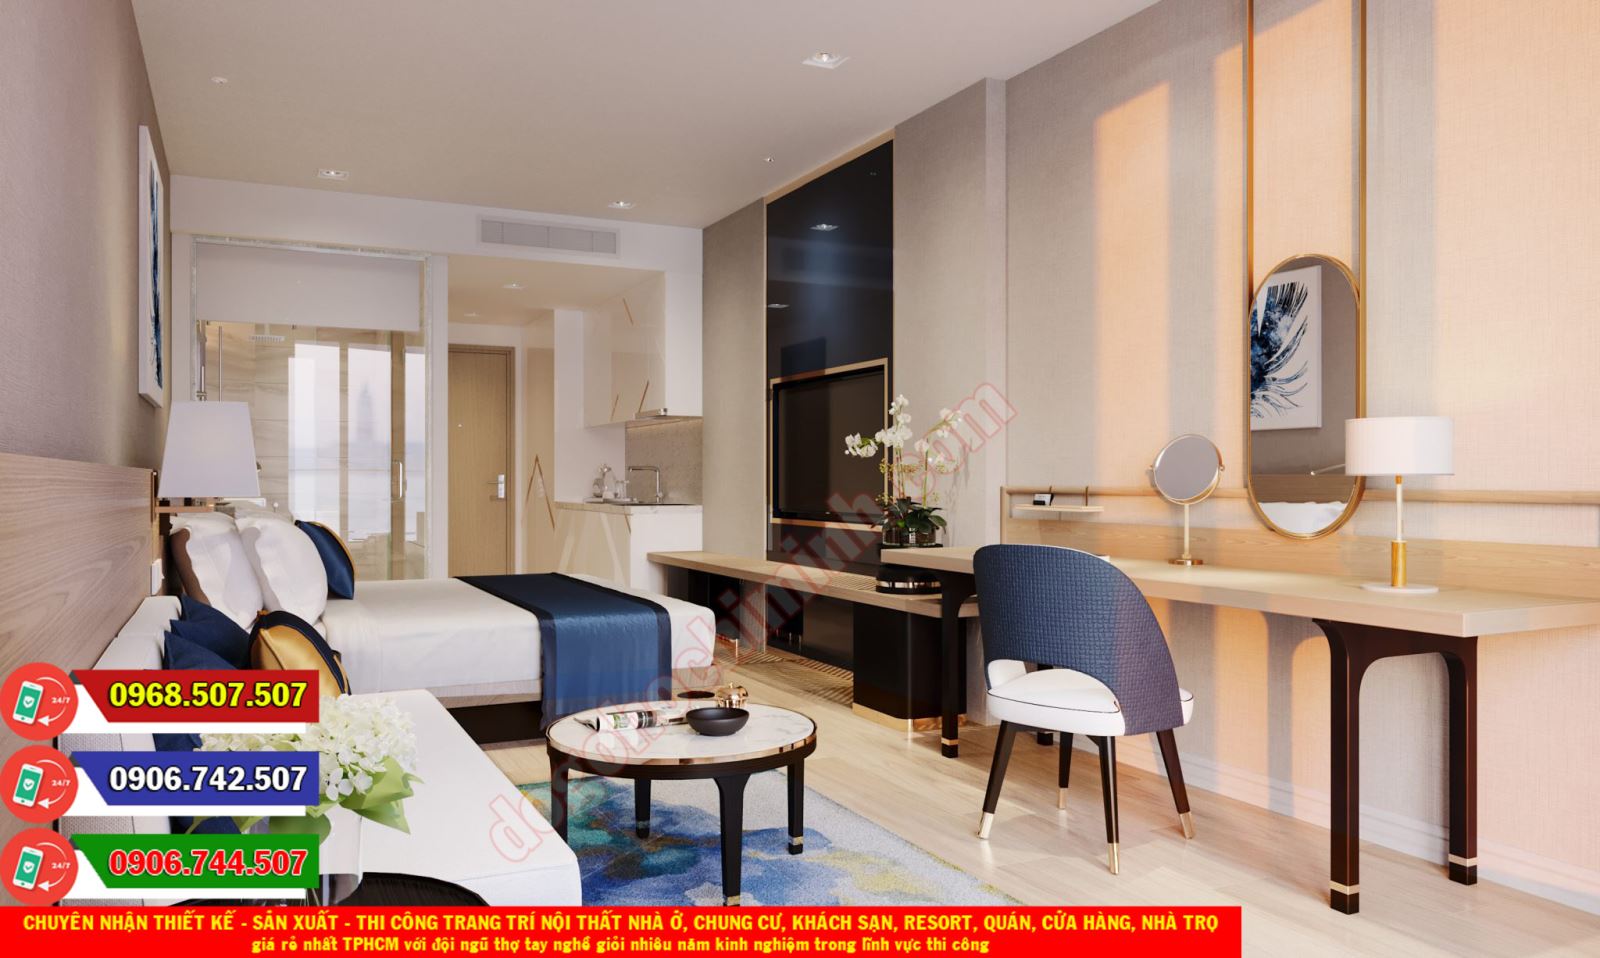 Thi công đồ gỗ nội thất khách sạn resort giá rẻ nhất Phước Thạnh ...